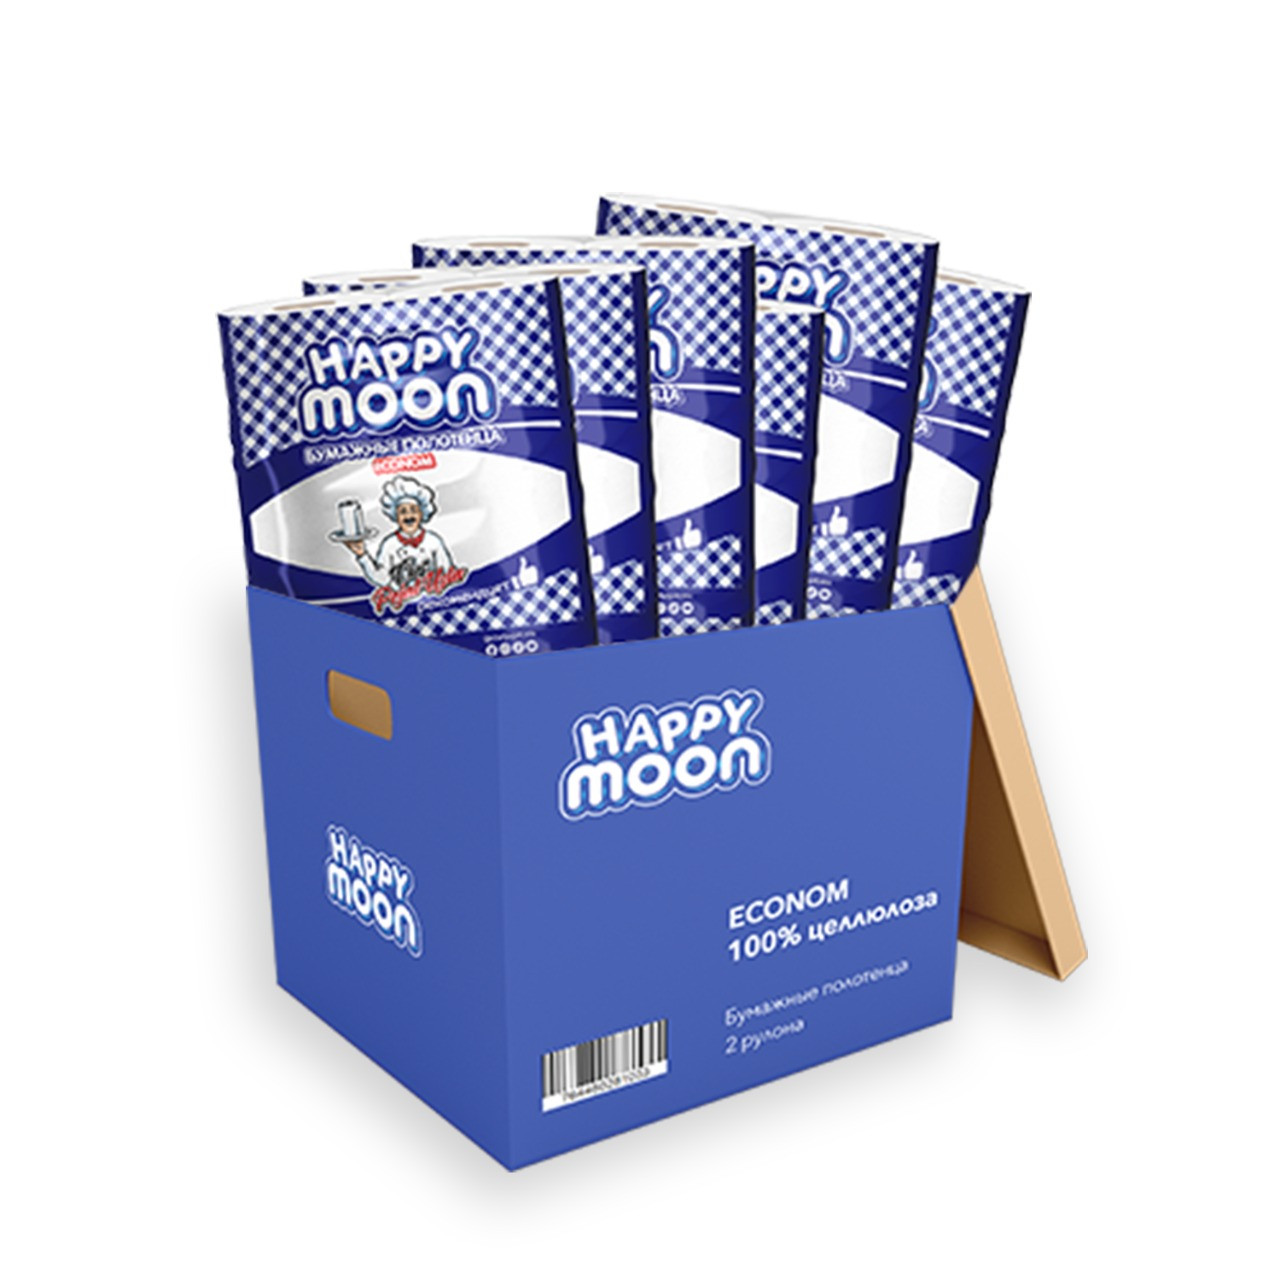 Бумажные полотенца Happy Moon Econom 2 шт * 6 упаковок (12 рулонов)